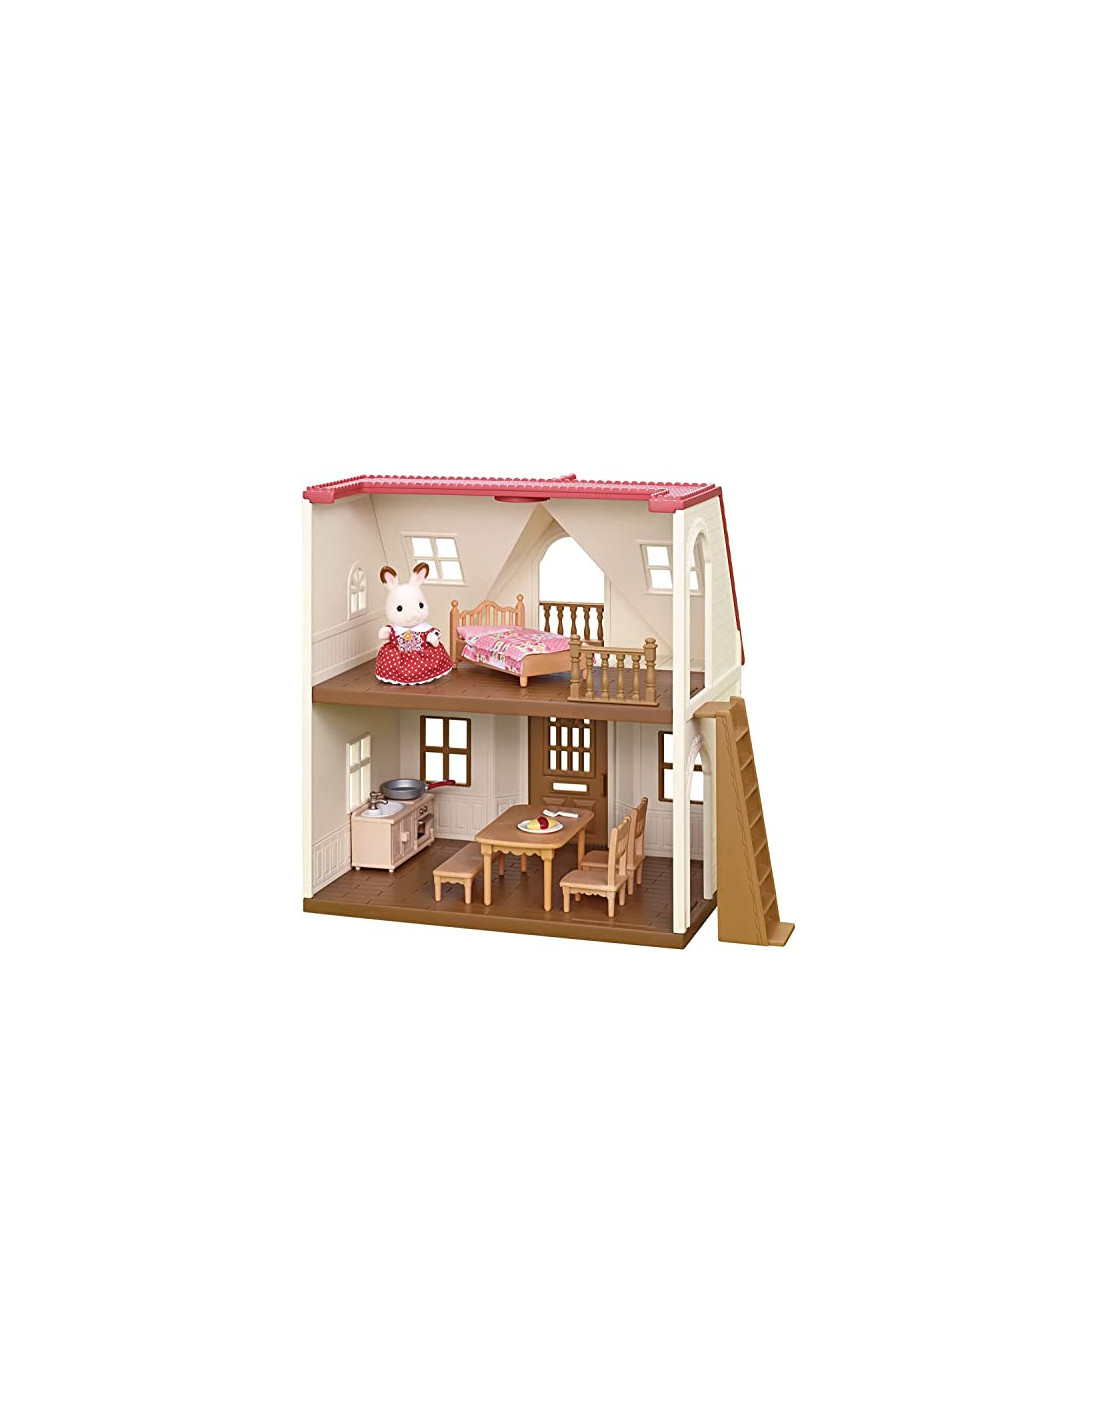 Sylvanian Families - Le Village - Le cosy cottage du village - Maison de  poupée - Mini poupées